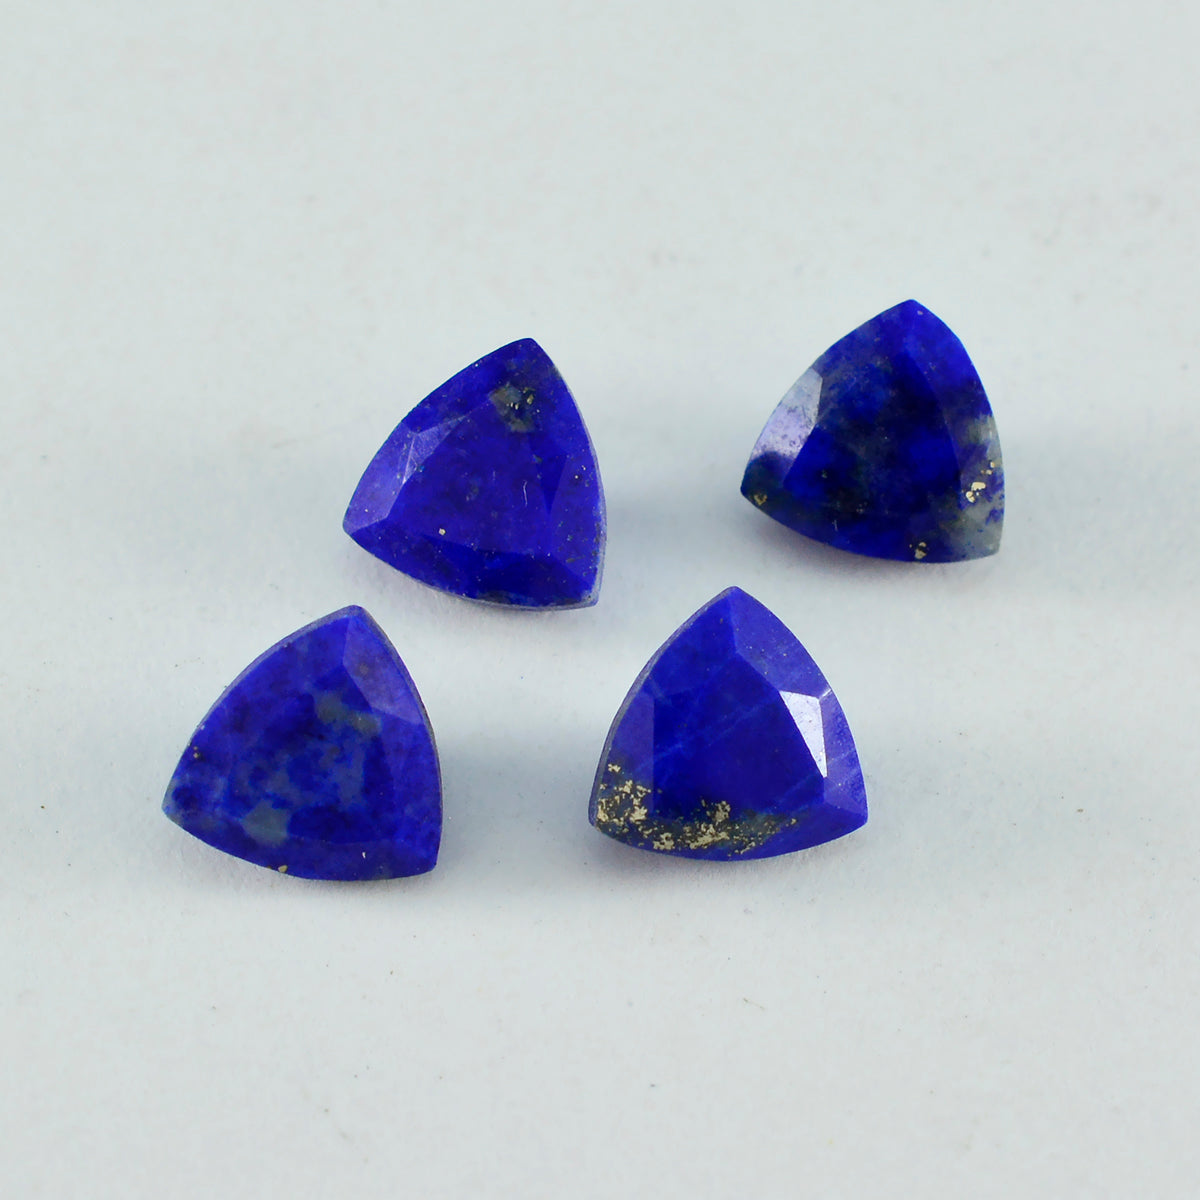 riyogems 1 st naturlig blå lapis lazuli fasetterad 11x11 mm biljoner form aa kvalitetsädelstenar